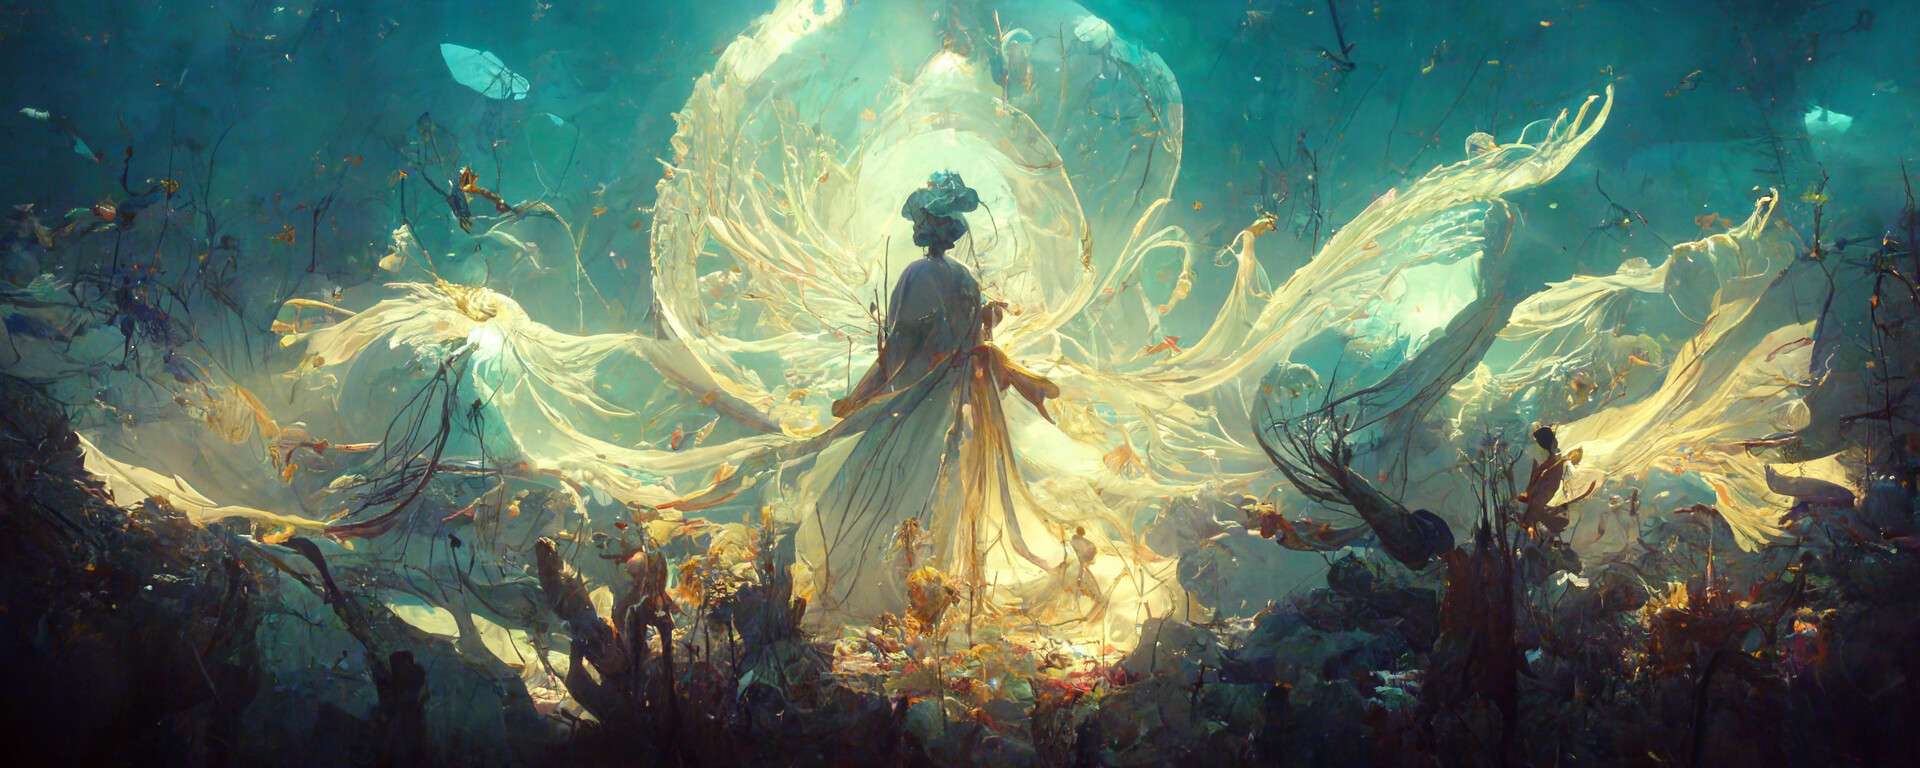 WhimmY, Underwater Goddess, Midjourney artwork, 2023